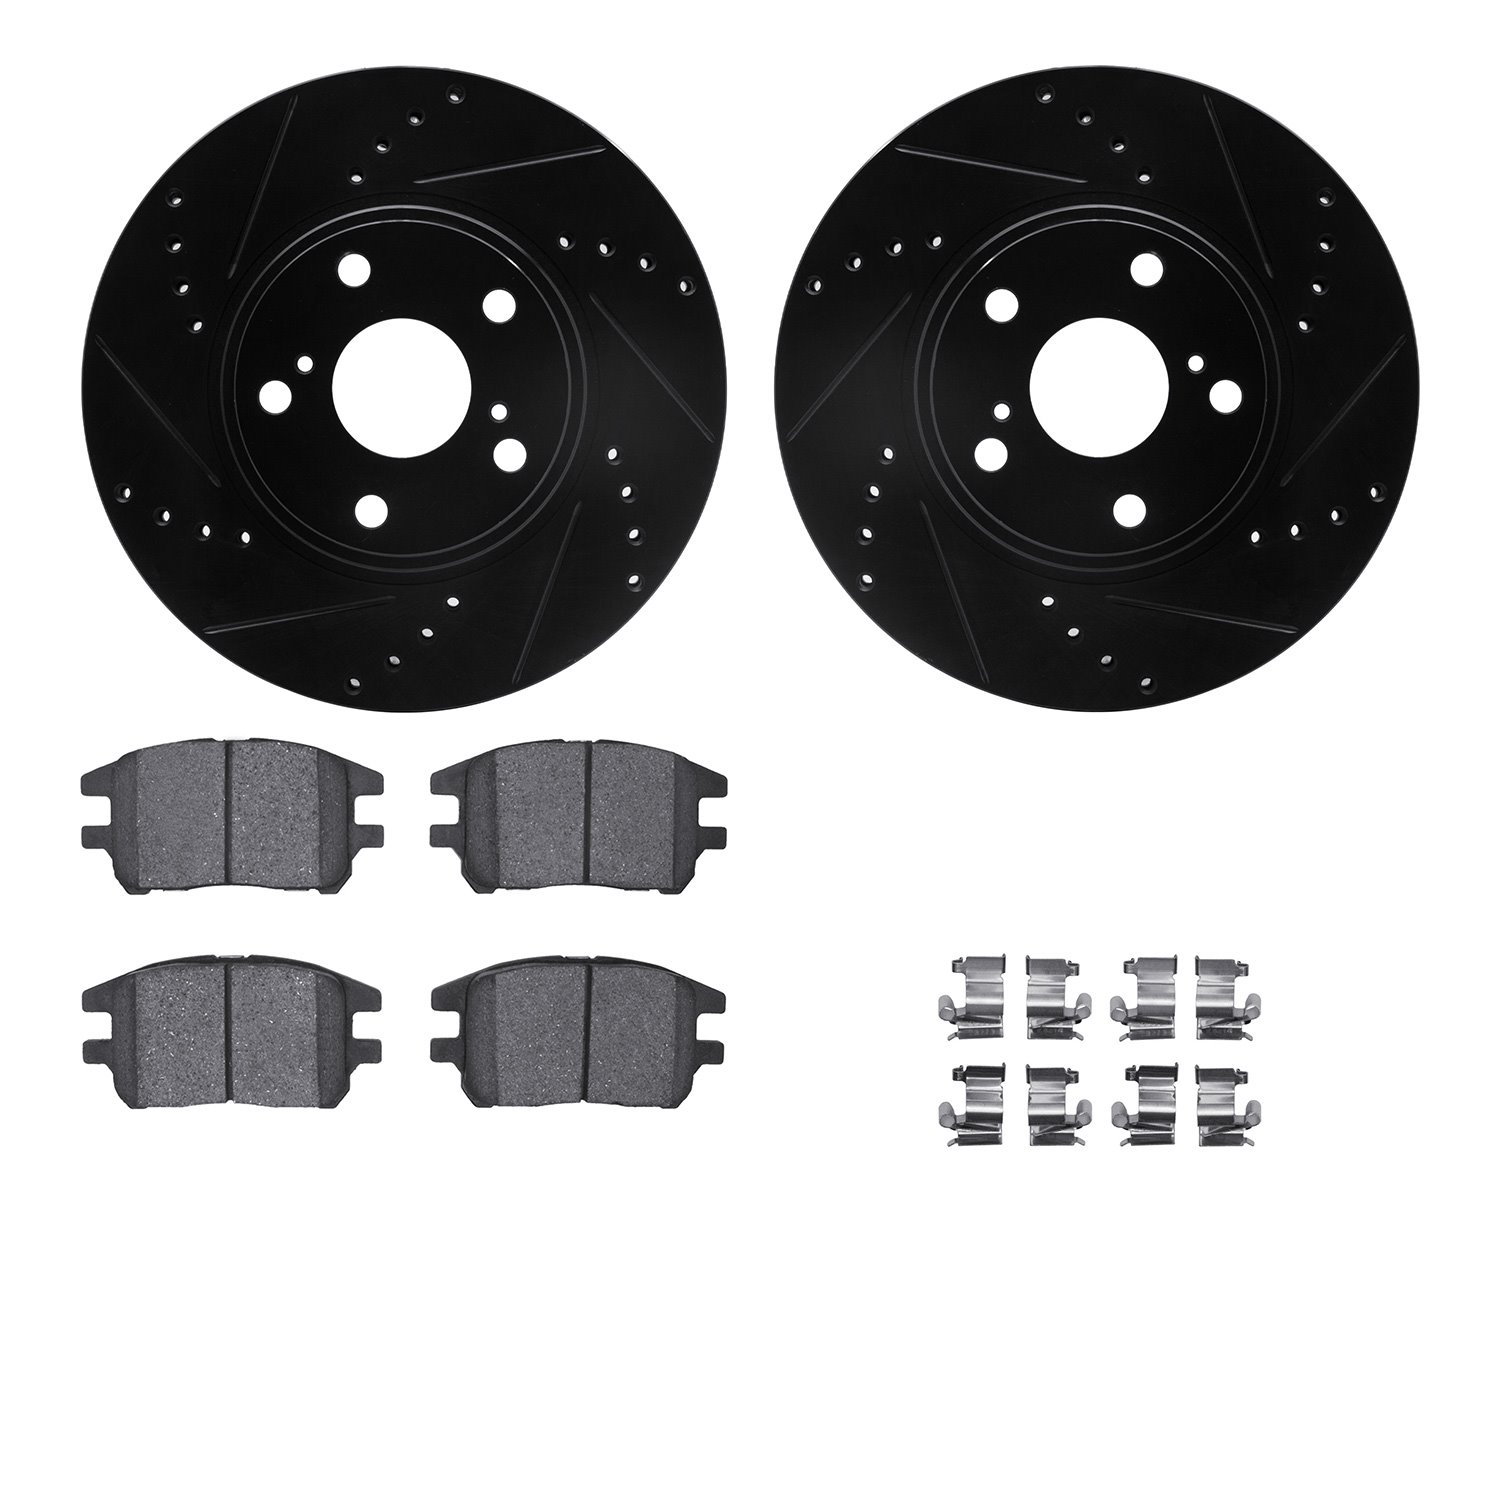 8312-76143 Drilled/Slotted Brake Rotors with 3000-Series Ceramic Brake Pads Kit & Hardware [Black], 2002-2003 Lexus/Toyota/Scion